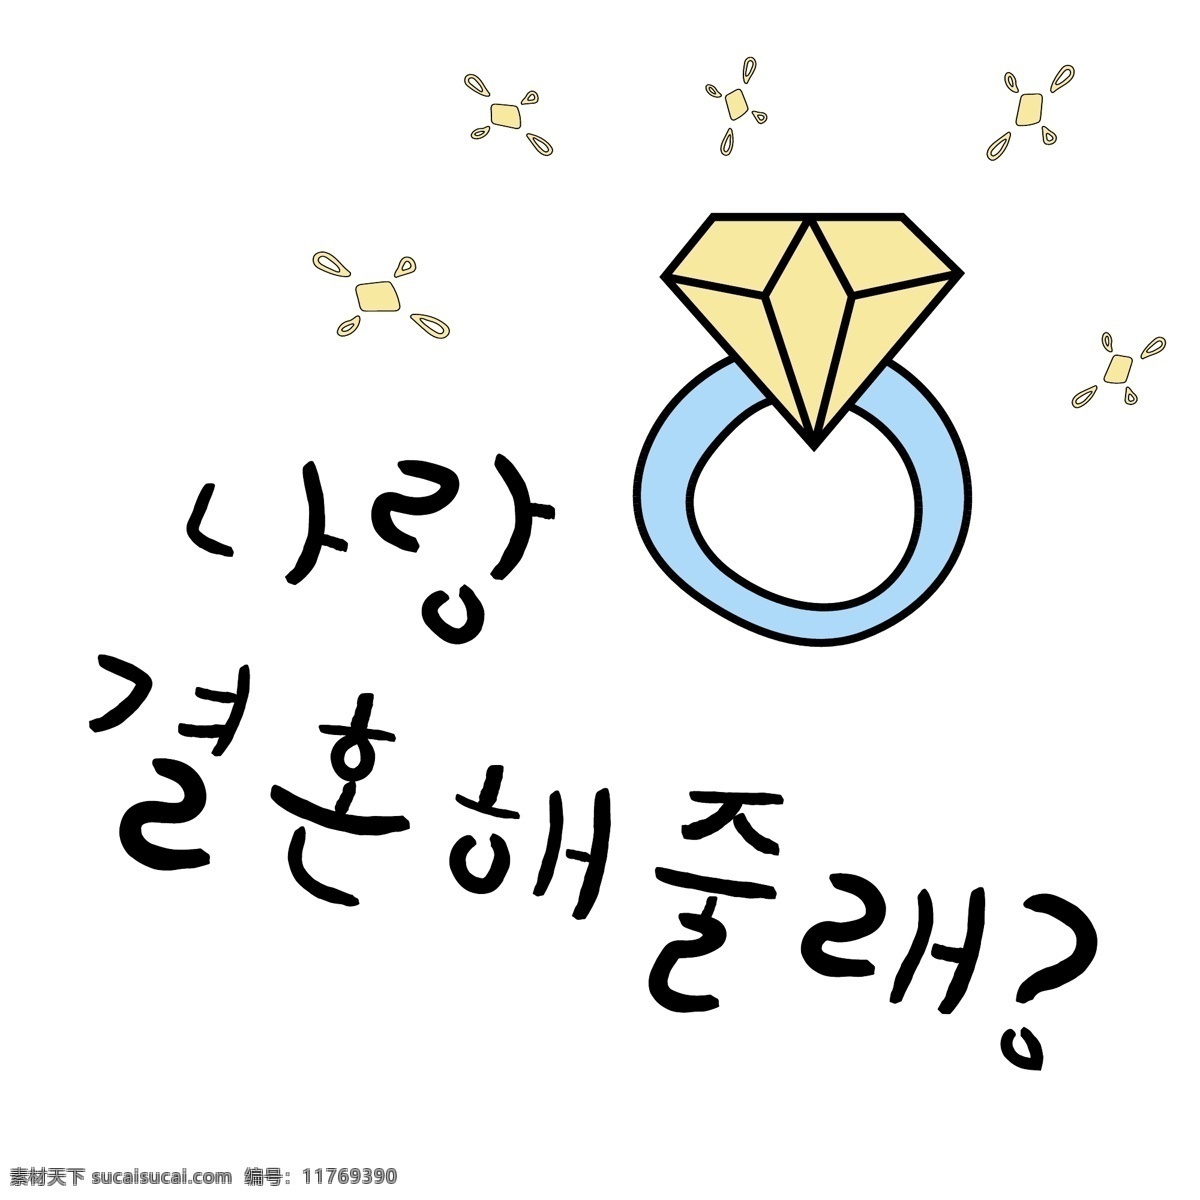 戒指 半 韩国 常用语 结婚 肝药 跟我结婚吧 名黄色 钓鱼鱼 漫画 钻戒 小的 向量 星星 日常用语 卡通 蓝色